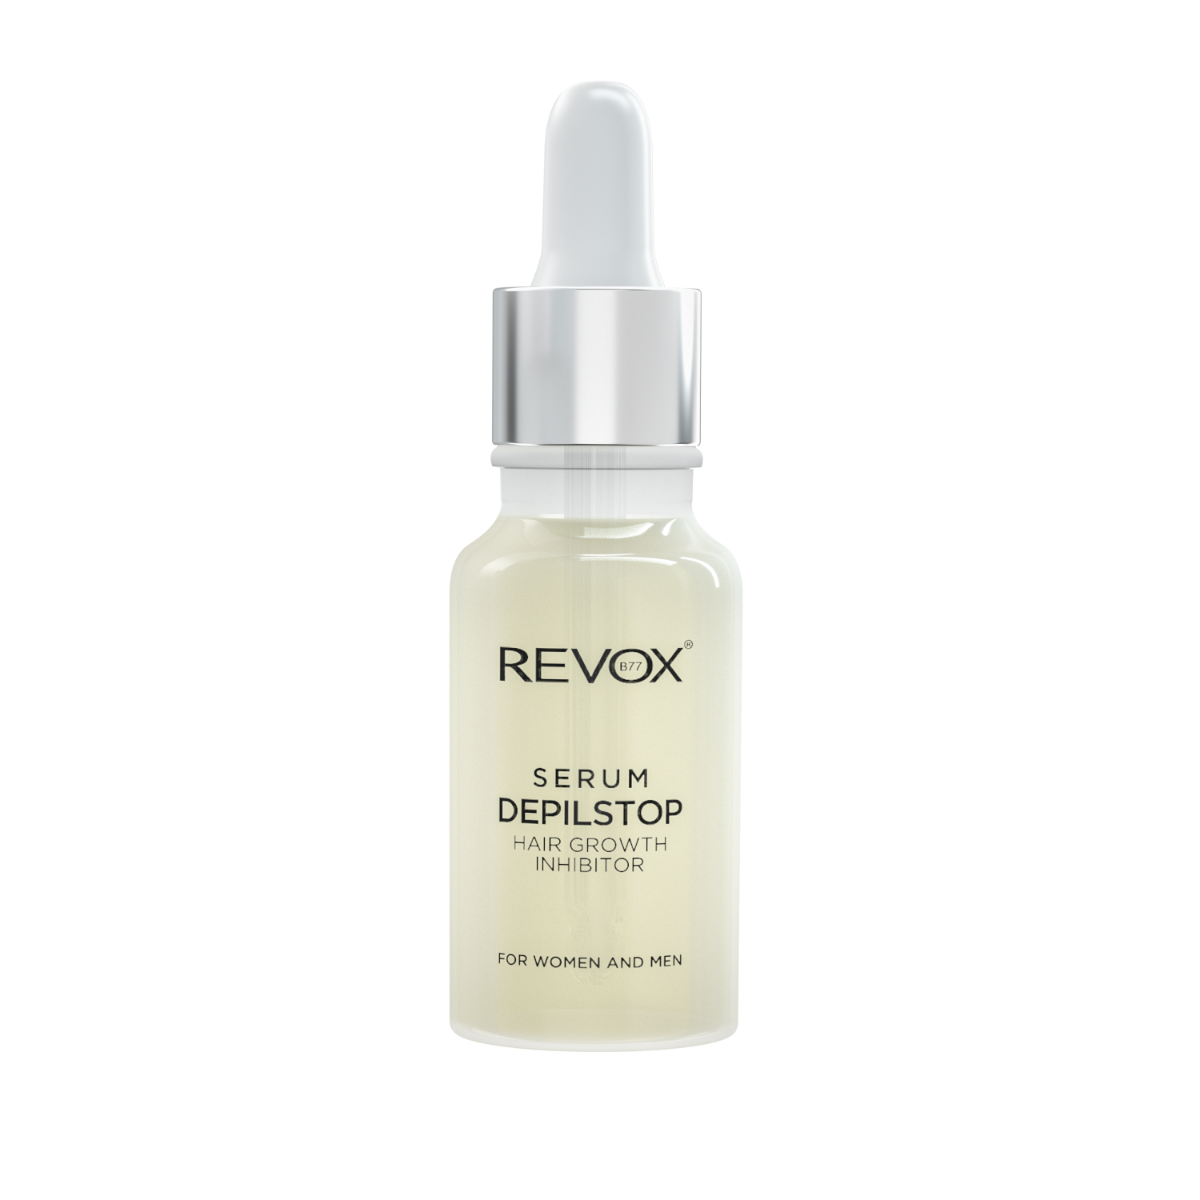 Tratament Revox Serum Depilstop pentru incetinirea cresterii parului, 20 ml, Revox